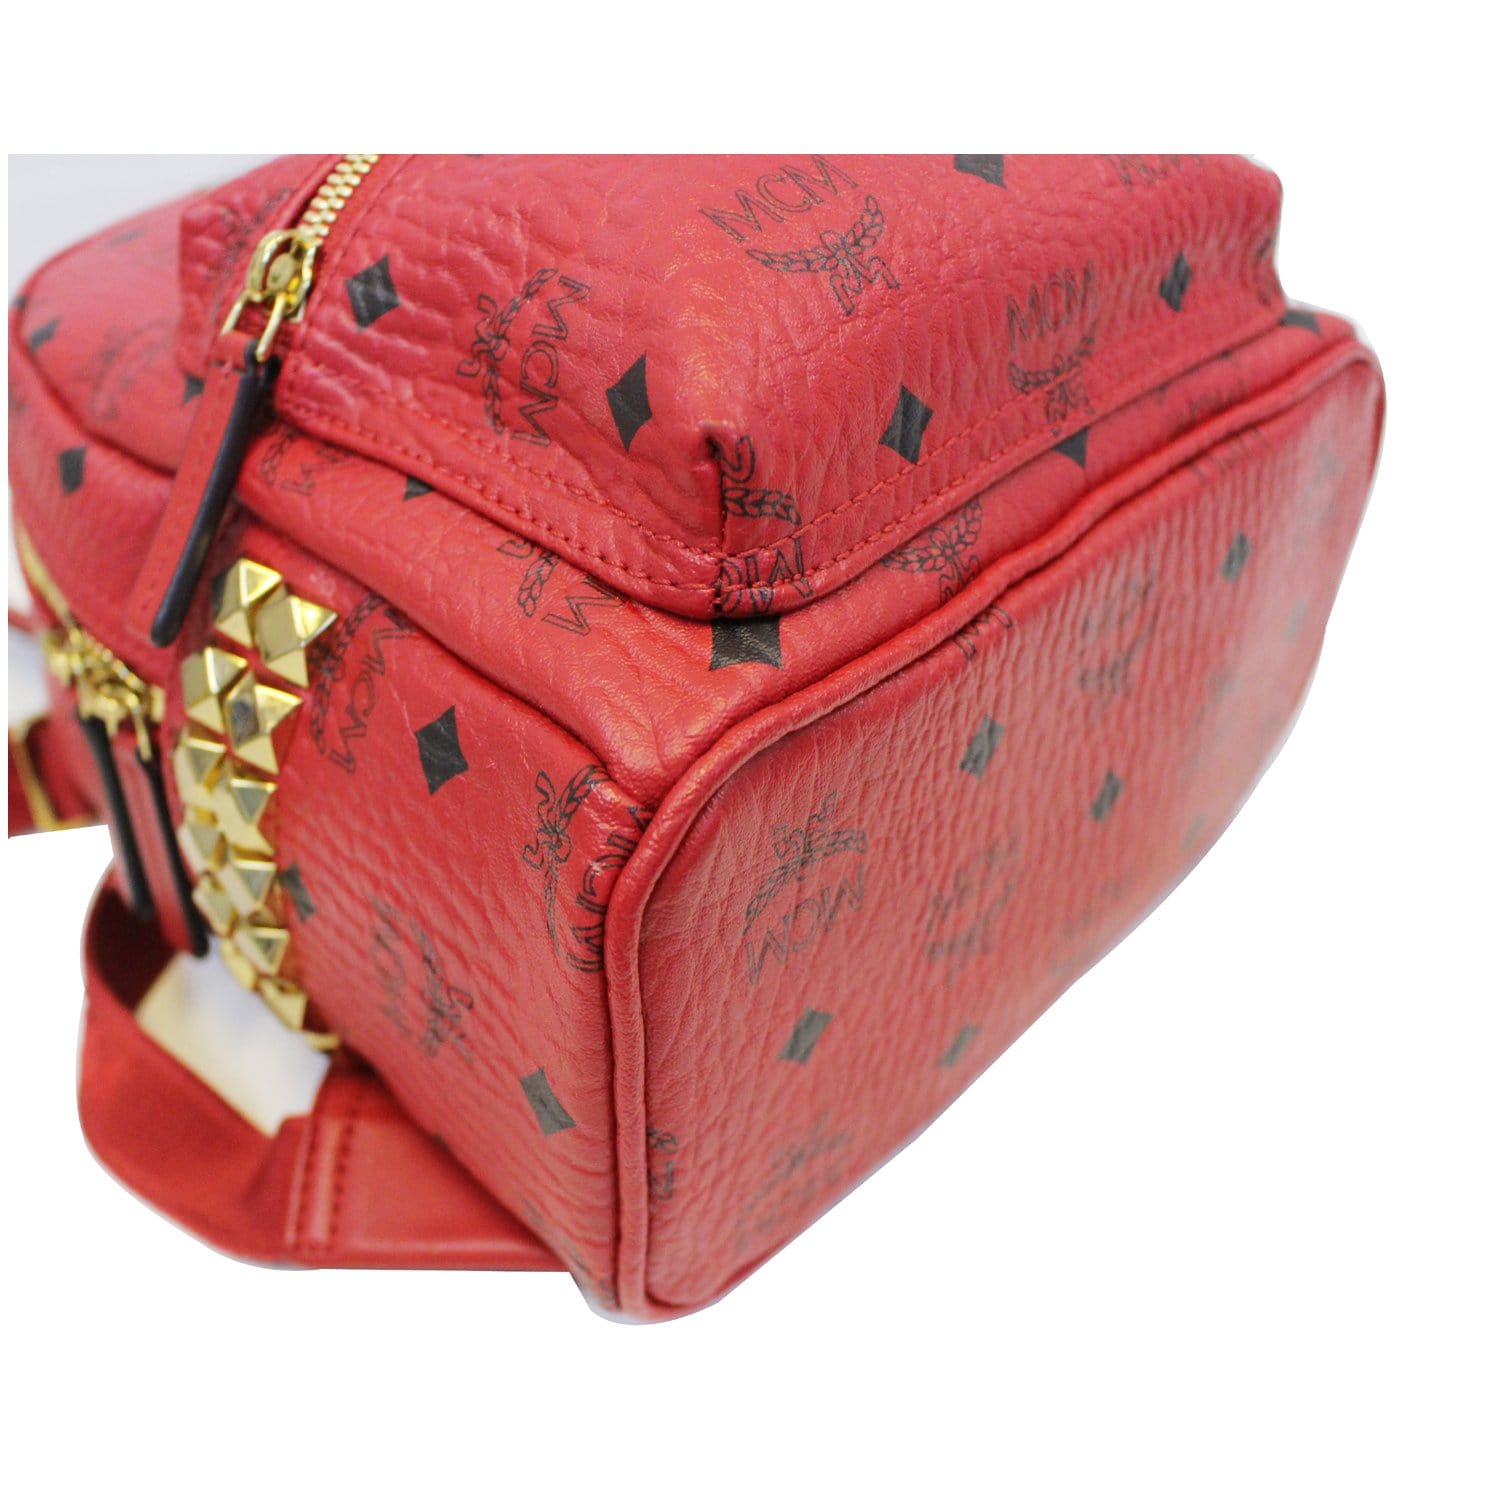 Mcm backpack bag red - Gem